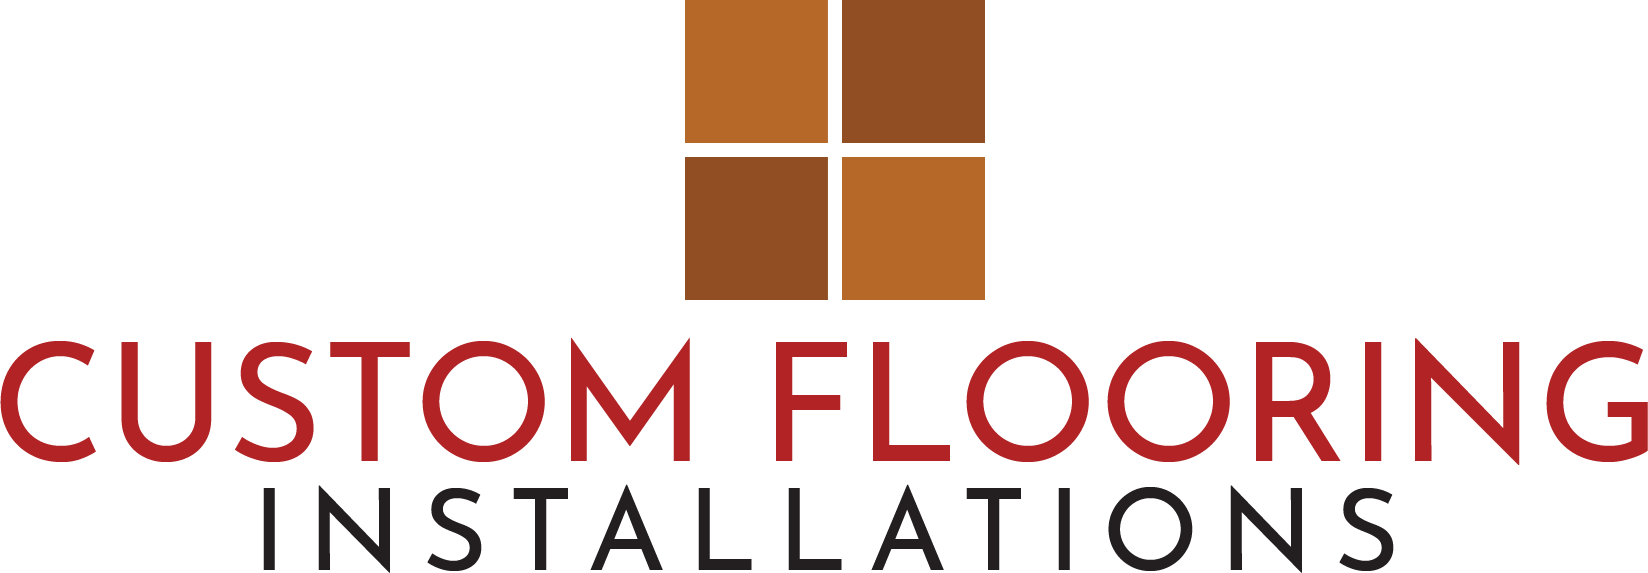 Custom Flooring Installations